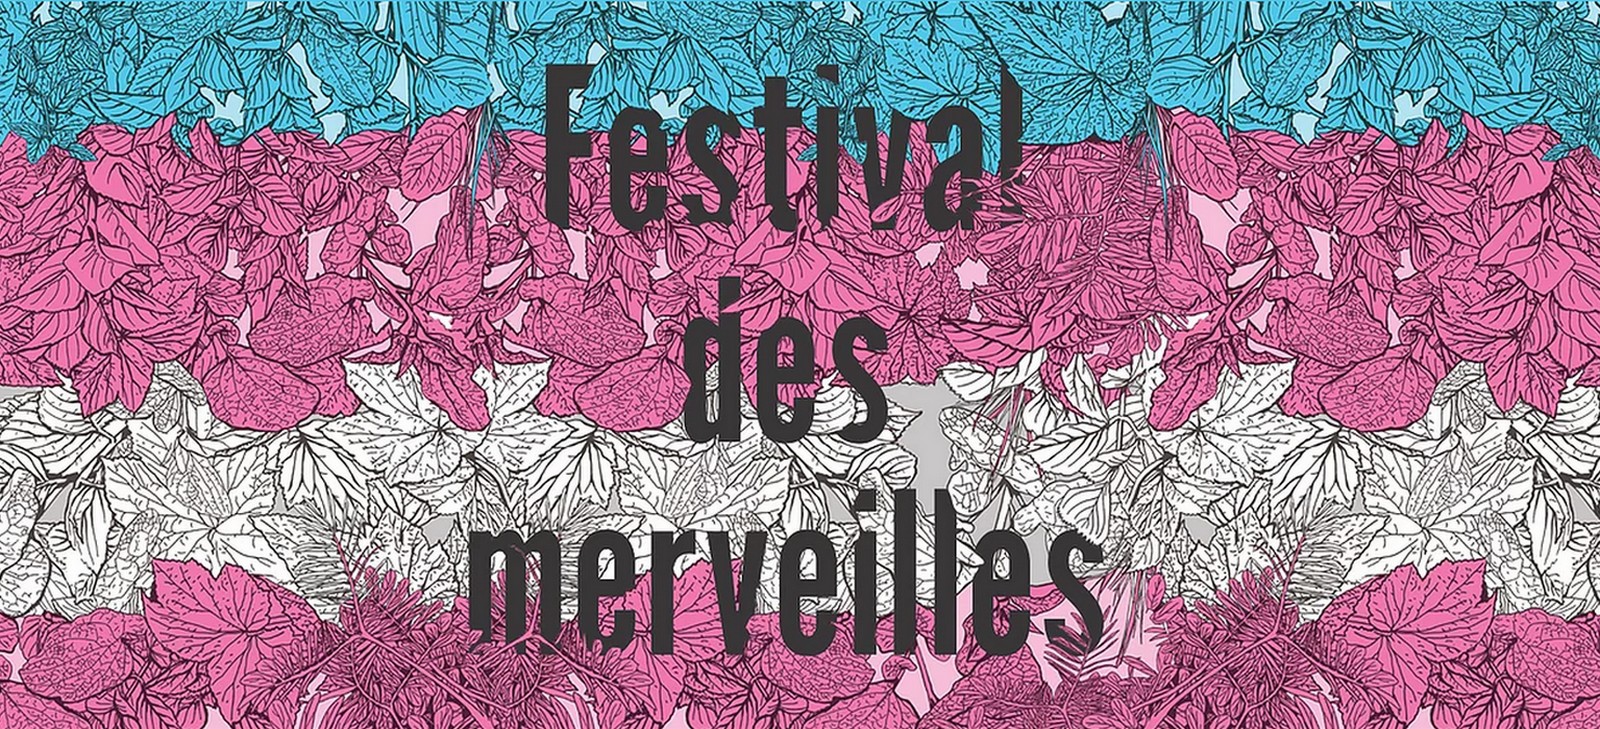 Festival des merveilles, du 17 octobre au 2 novembre 2019 à Paris